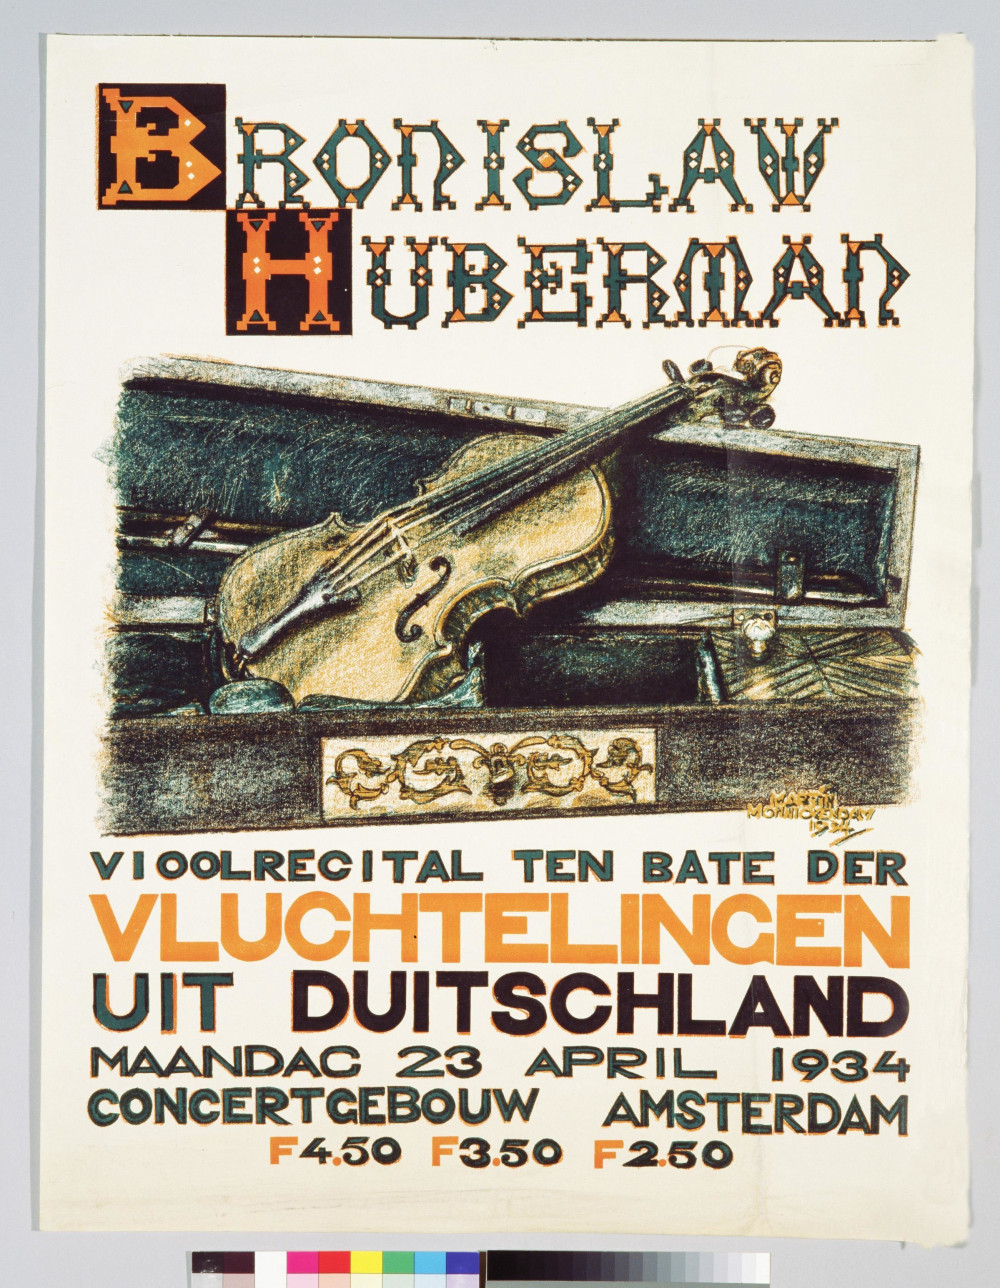 Affiche voor een vioolrecital van Bronislaw Hubermann in het Concertgebouw ten bate van de vluchtelingen uit Duitsland